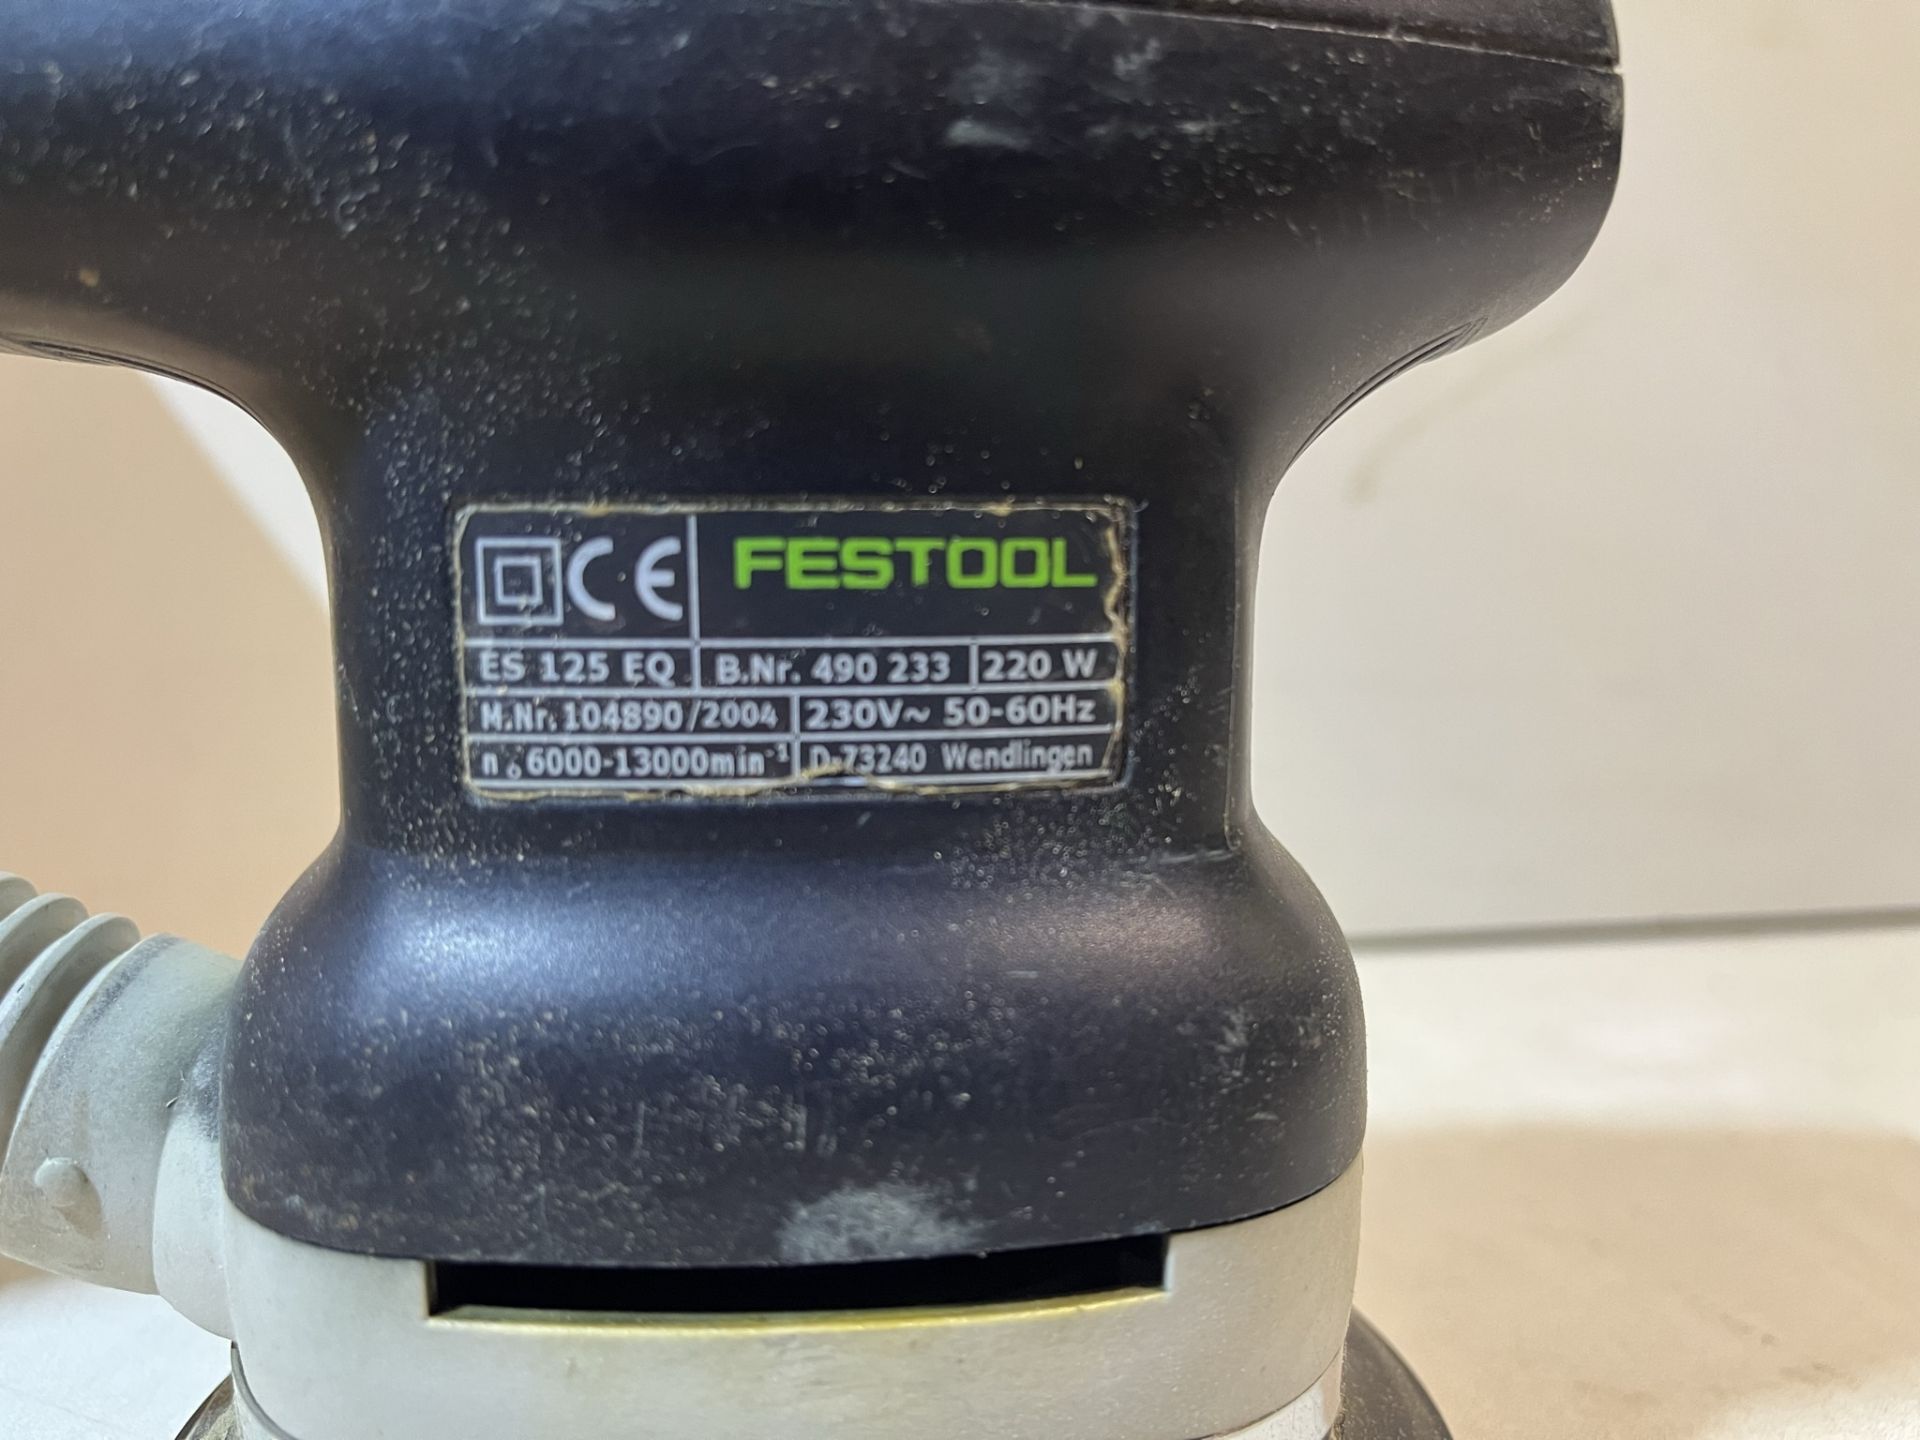 Festool ES125 EQ-PLUS Eccentric Sander - Image 4 of 6